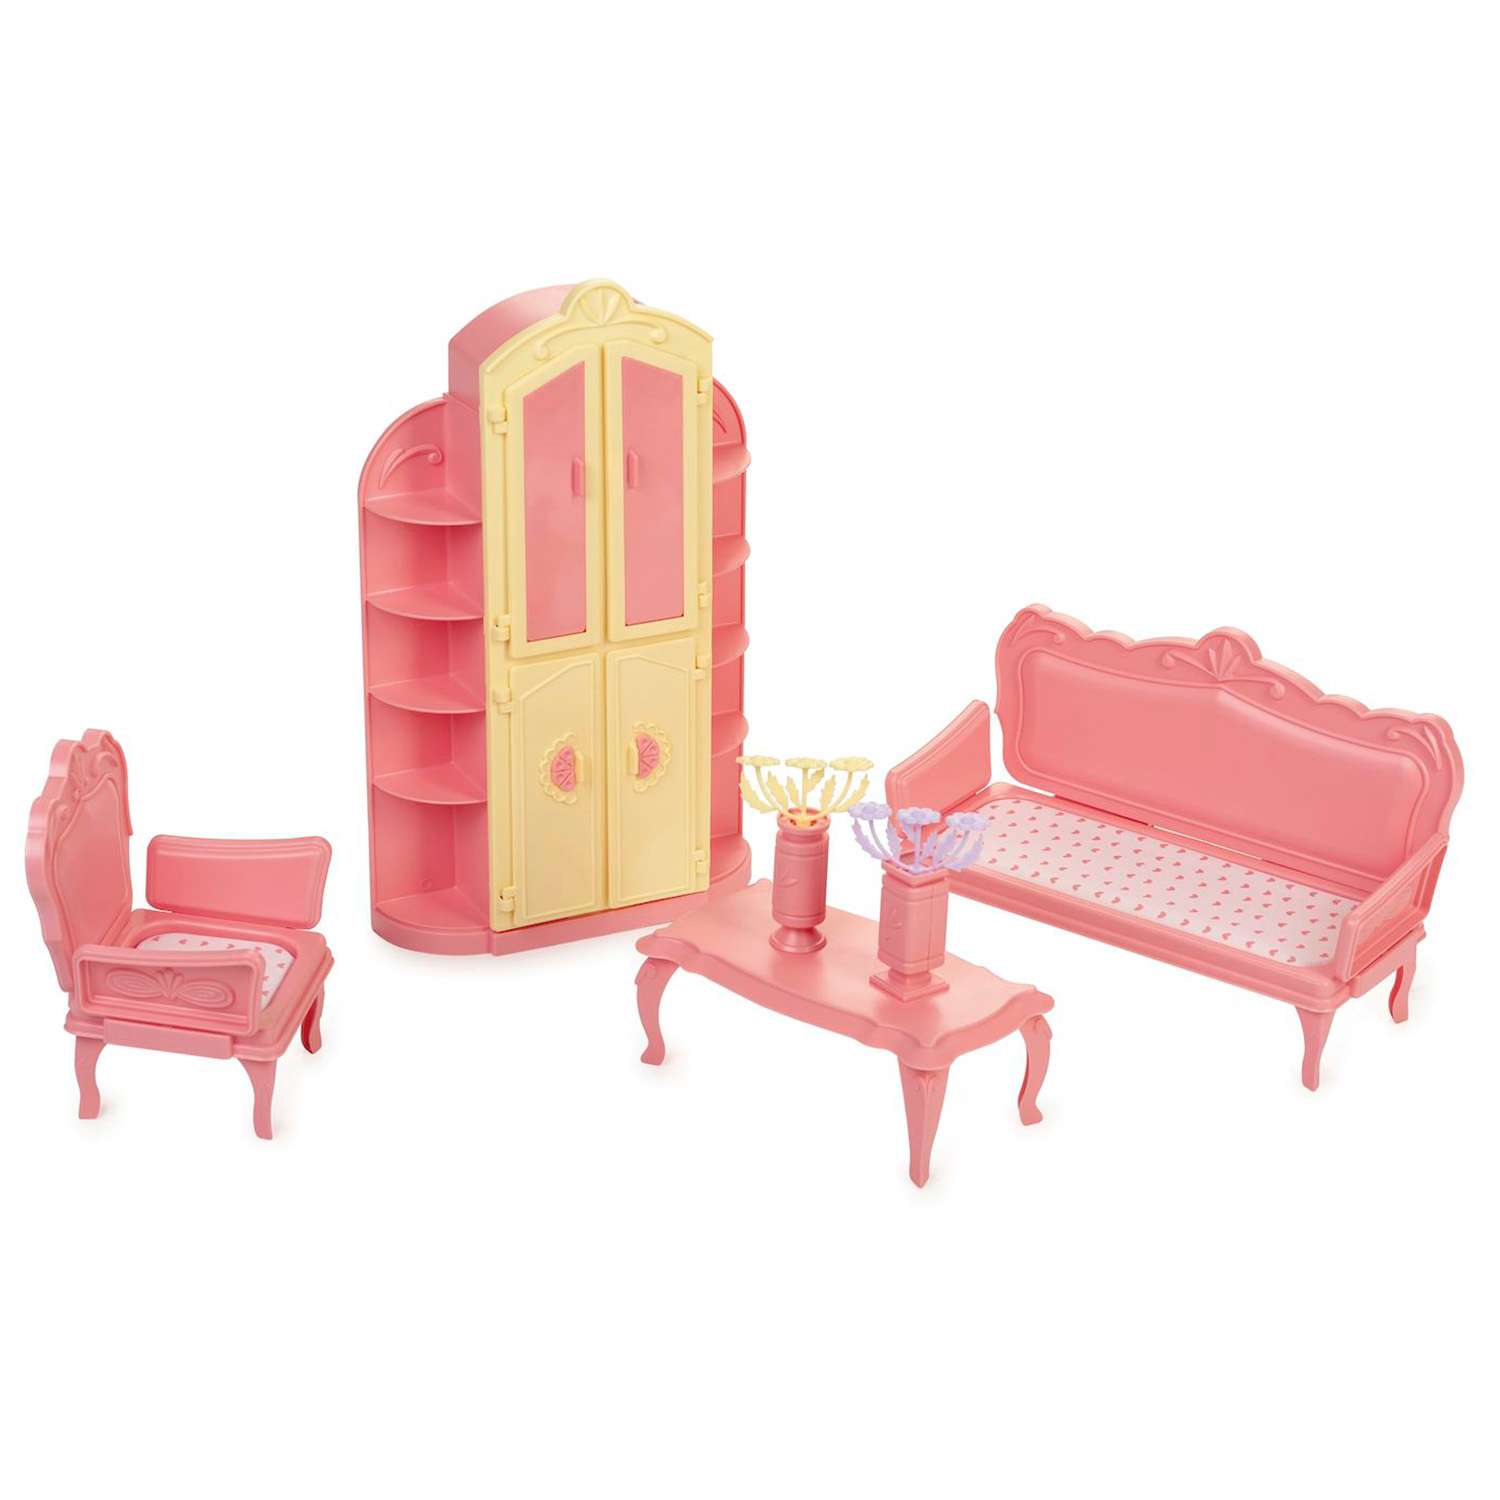 Игрушечная мебель для Барби